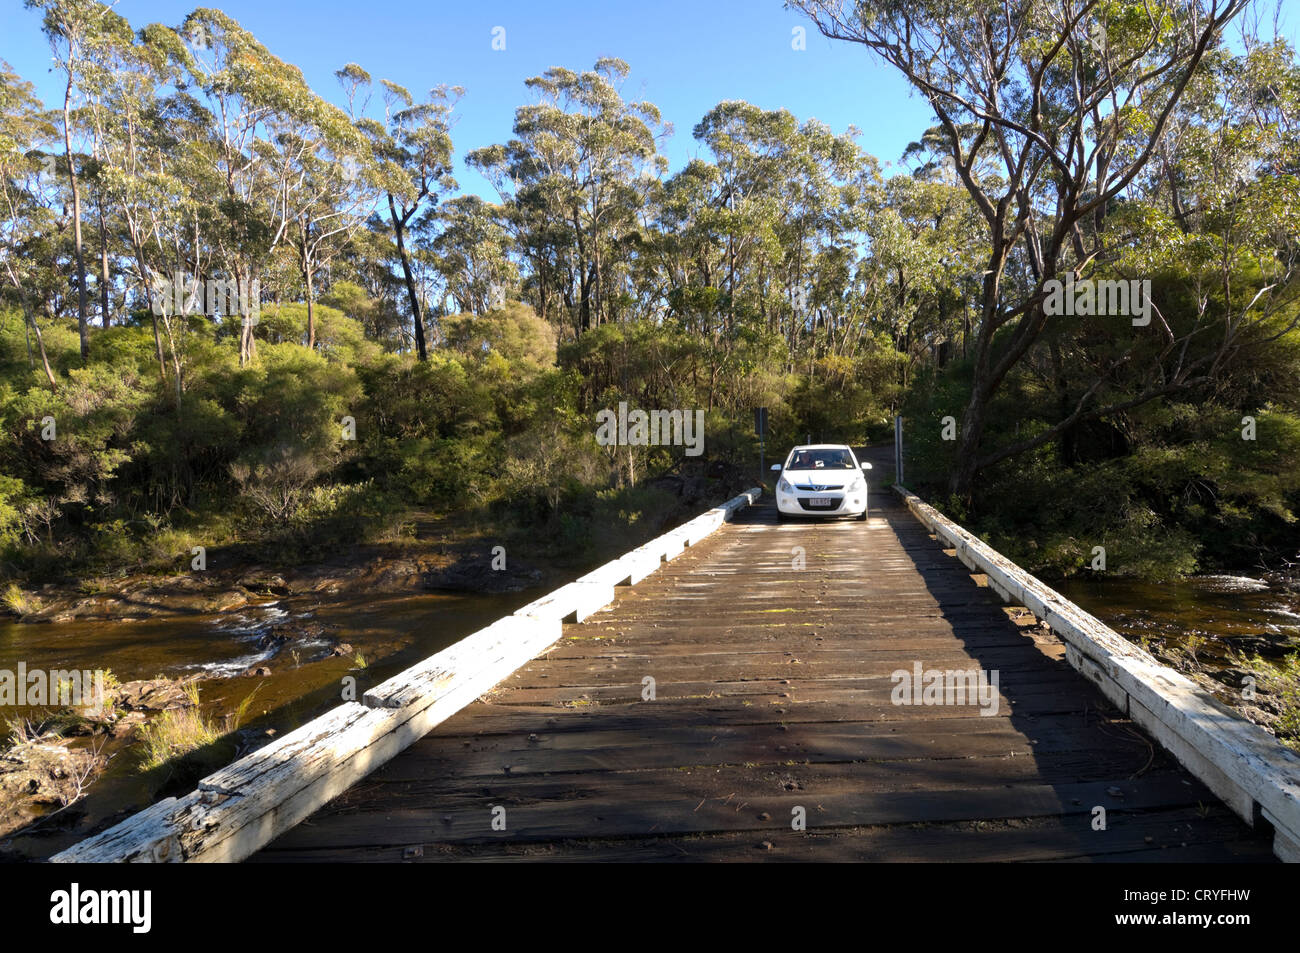 Voiture en traversant un pont de bois sur le Carrington Falls, parc national de Budderoo, New South Wales, NSW, Australie Banque D'Images